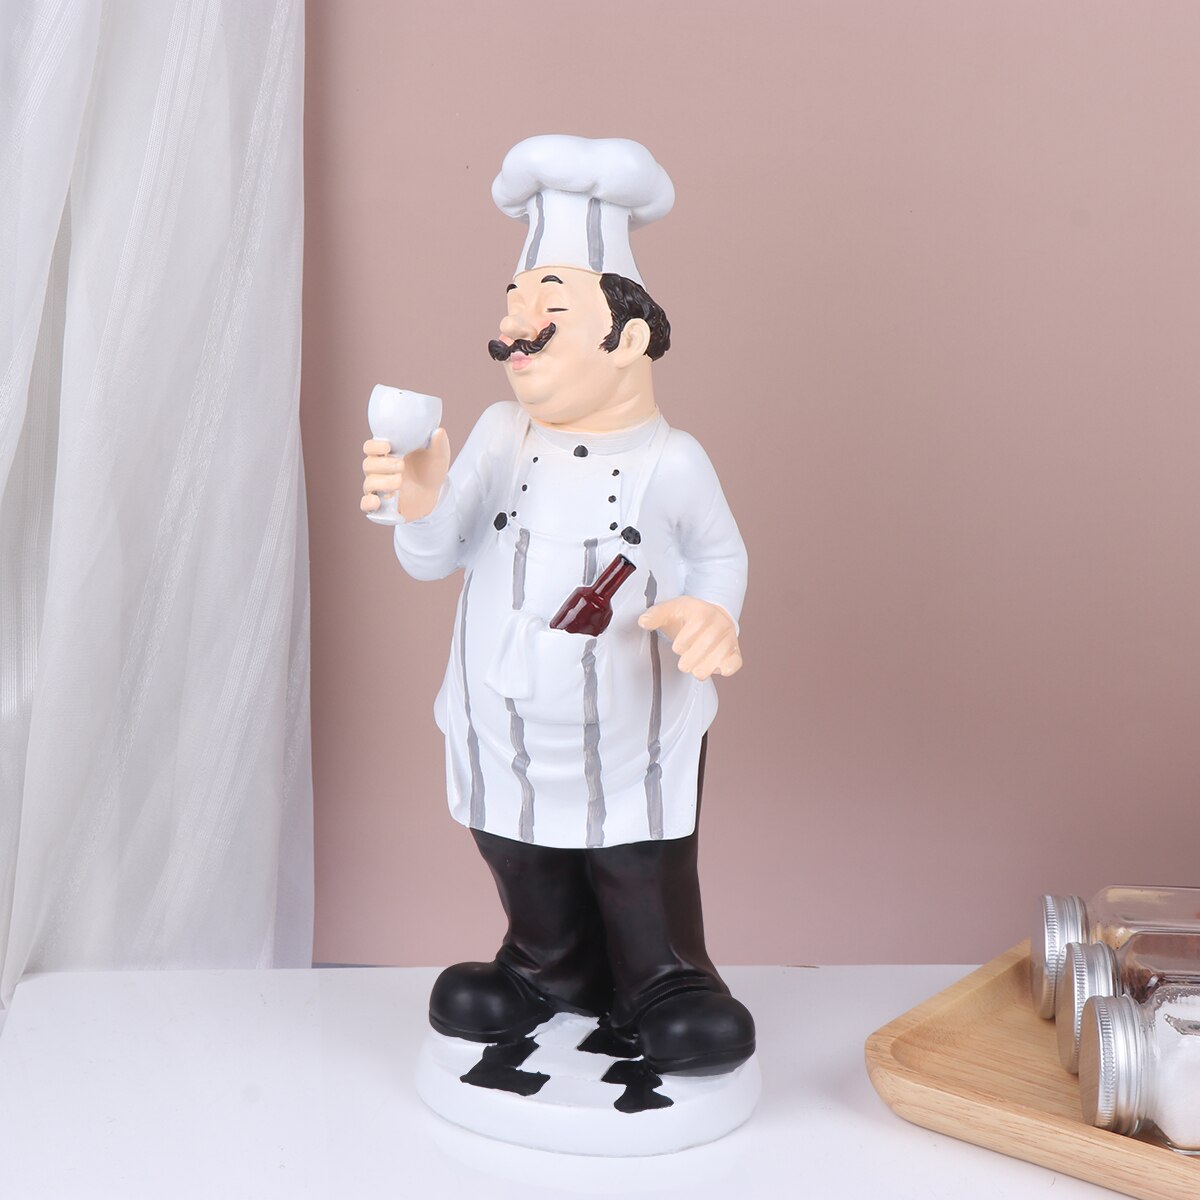 요리사 조각상 부엌 입상 장식 이탈리아 수지 인형 요리 요리 조각 뚱뚱한 프랑스 인물 장식 장식 모델 테이블